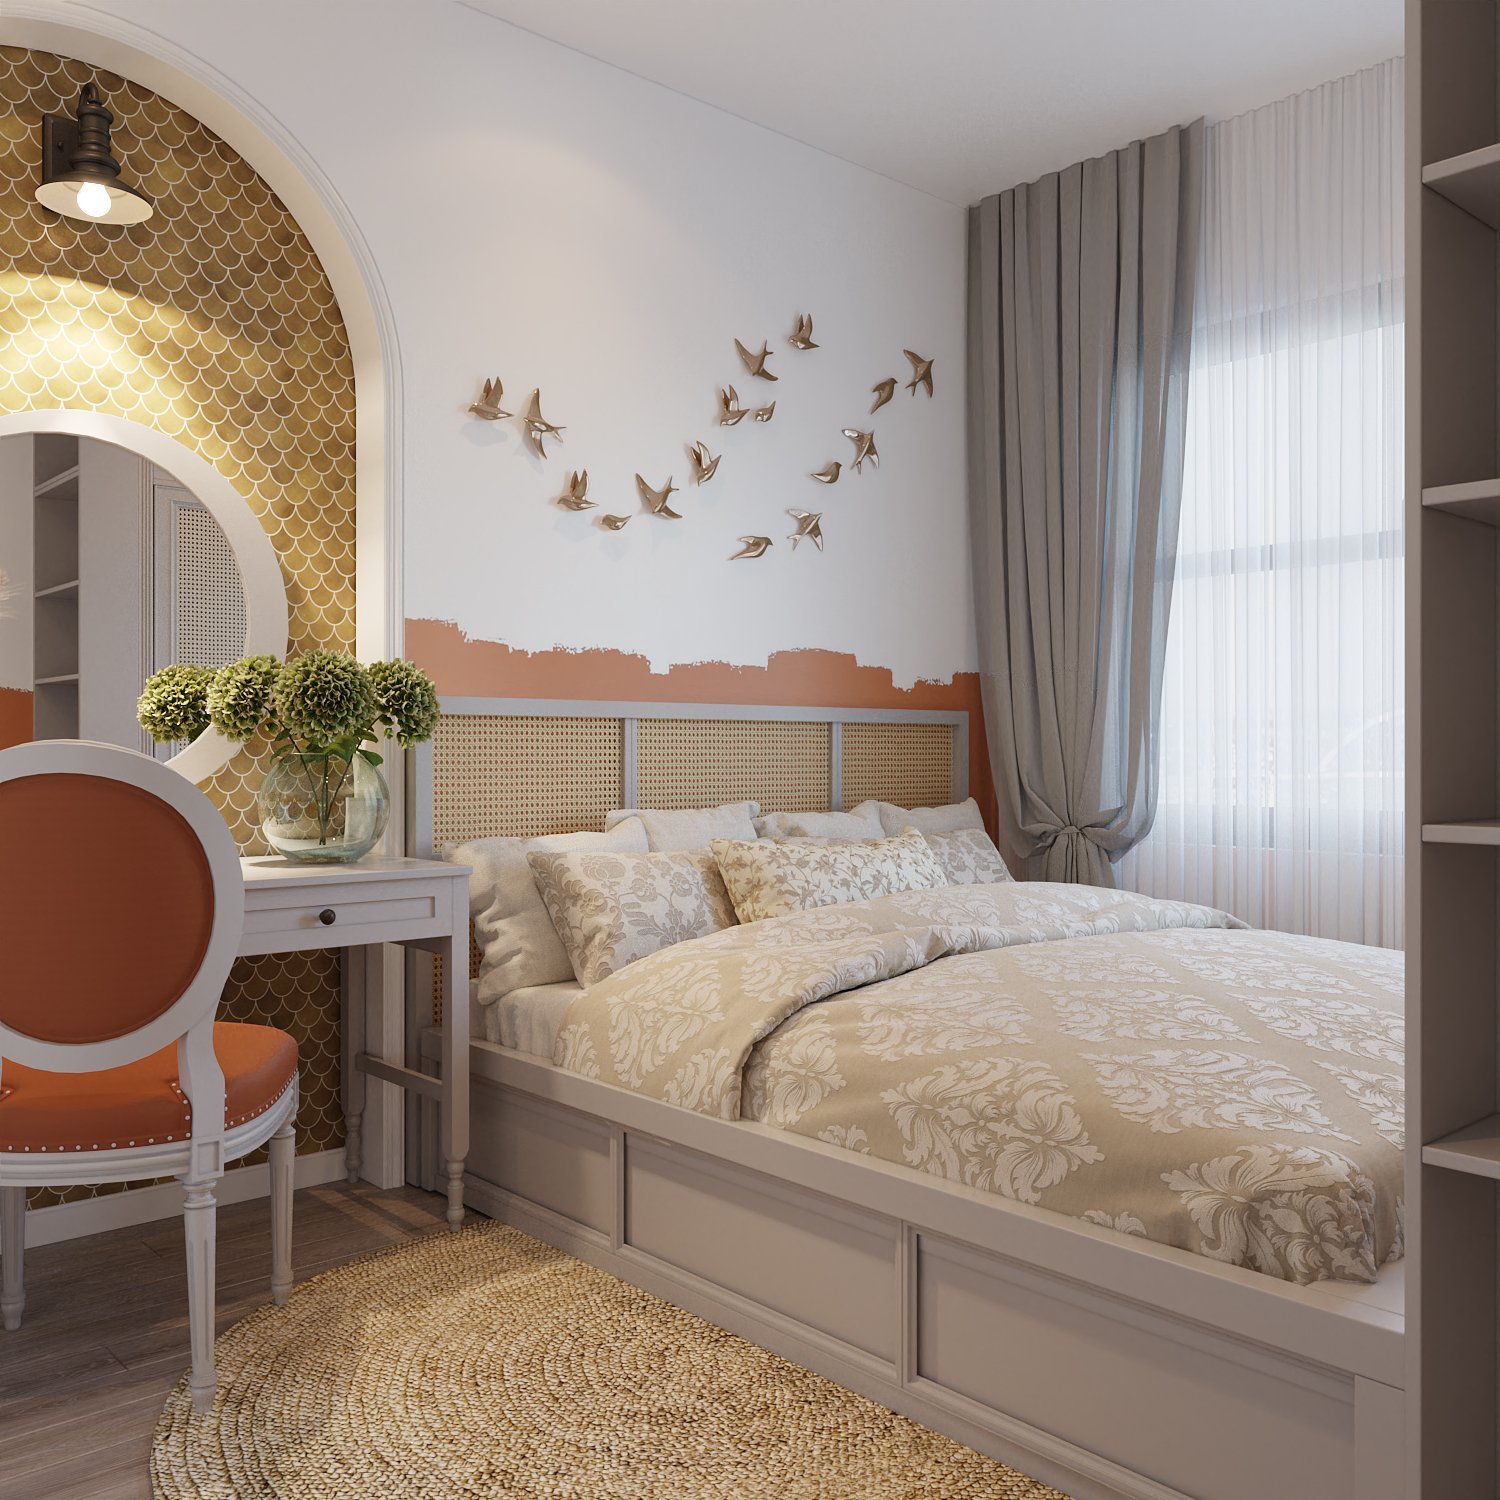 Thiết kế nội thất phòng ngủ là sự kết hợp hoàn hào giữa phong cách Indochine và Farmhouse. Đường nét hình vòm, hình ảnh đàn én mang lại cảm giác bình yên, thư thái.